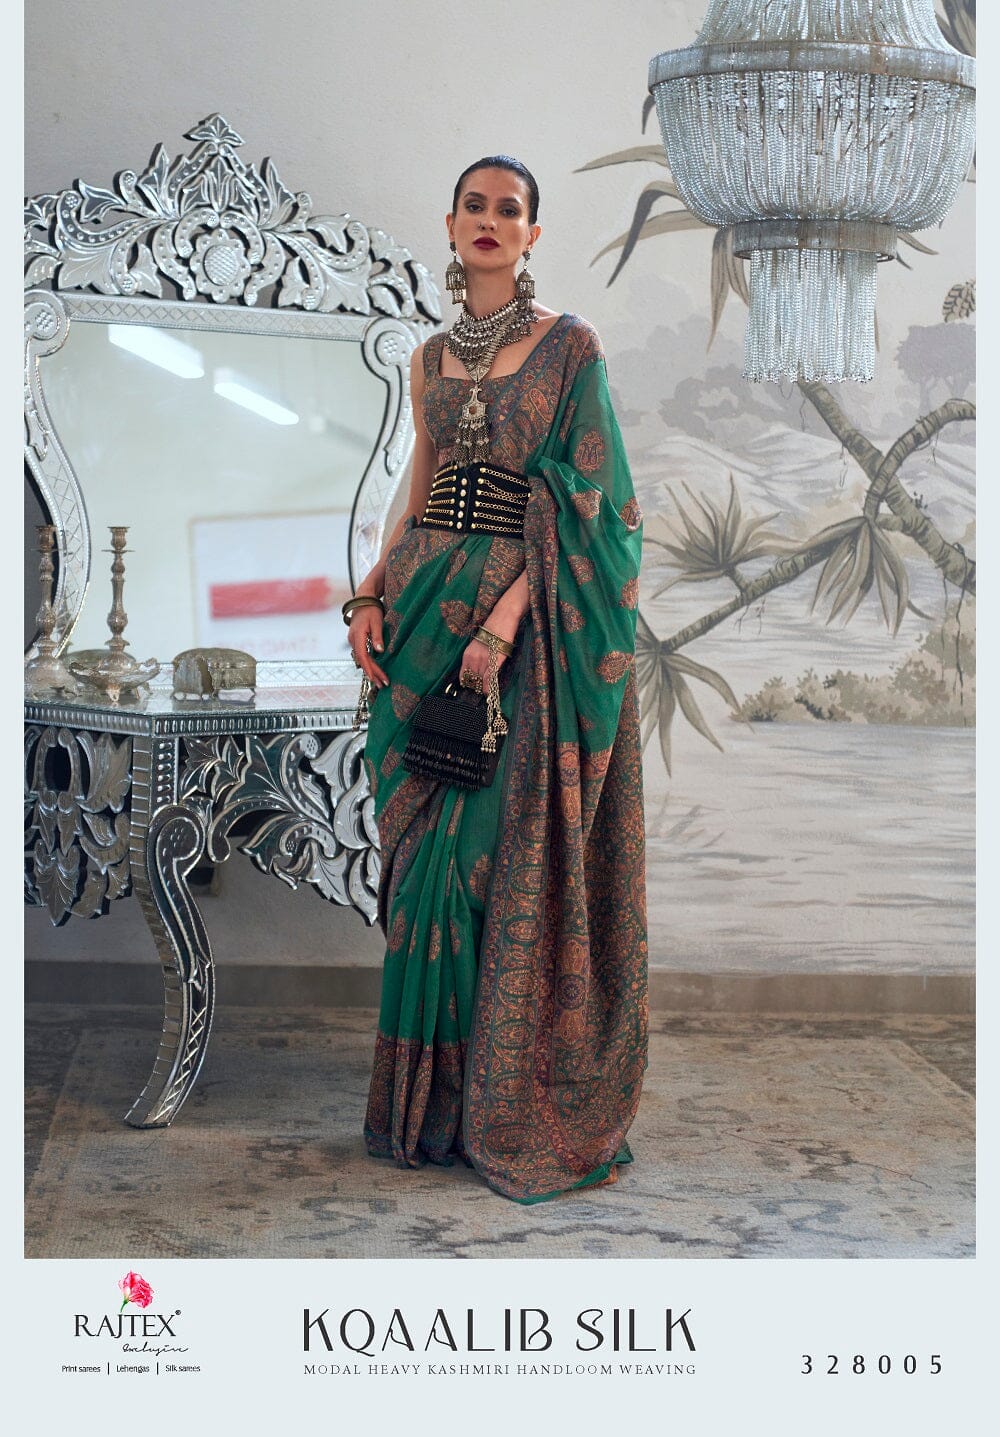 328005 Rajtex Kqaalib Silk Heavy Handloom Weaving Saree Silk Saree Rajtex 